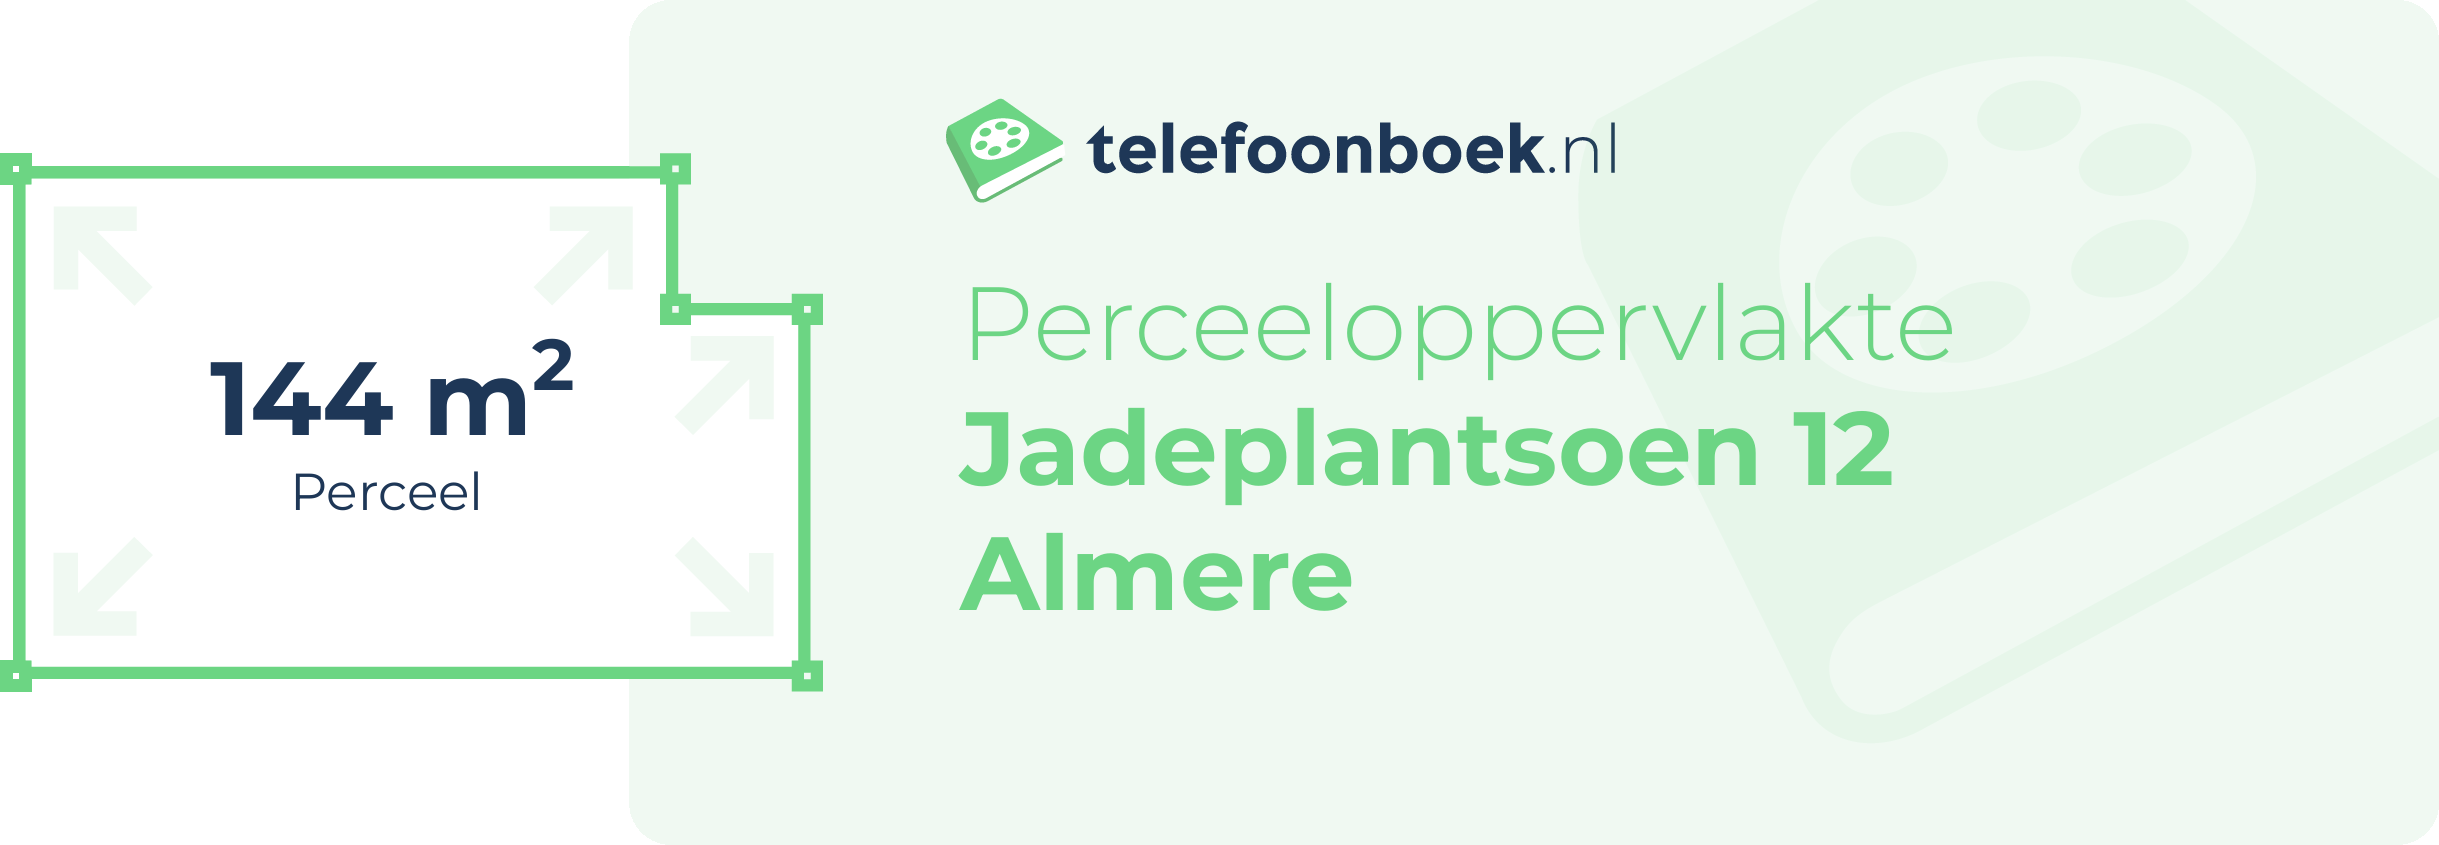 Perceeloppervlakte Jadeplantsoen 12 Almere